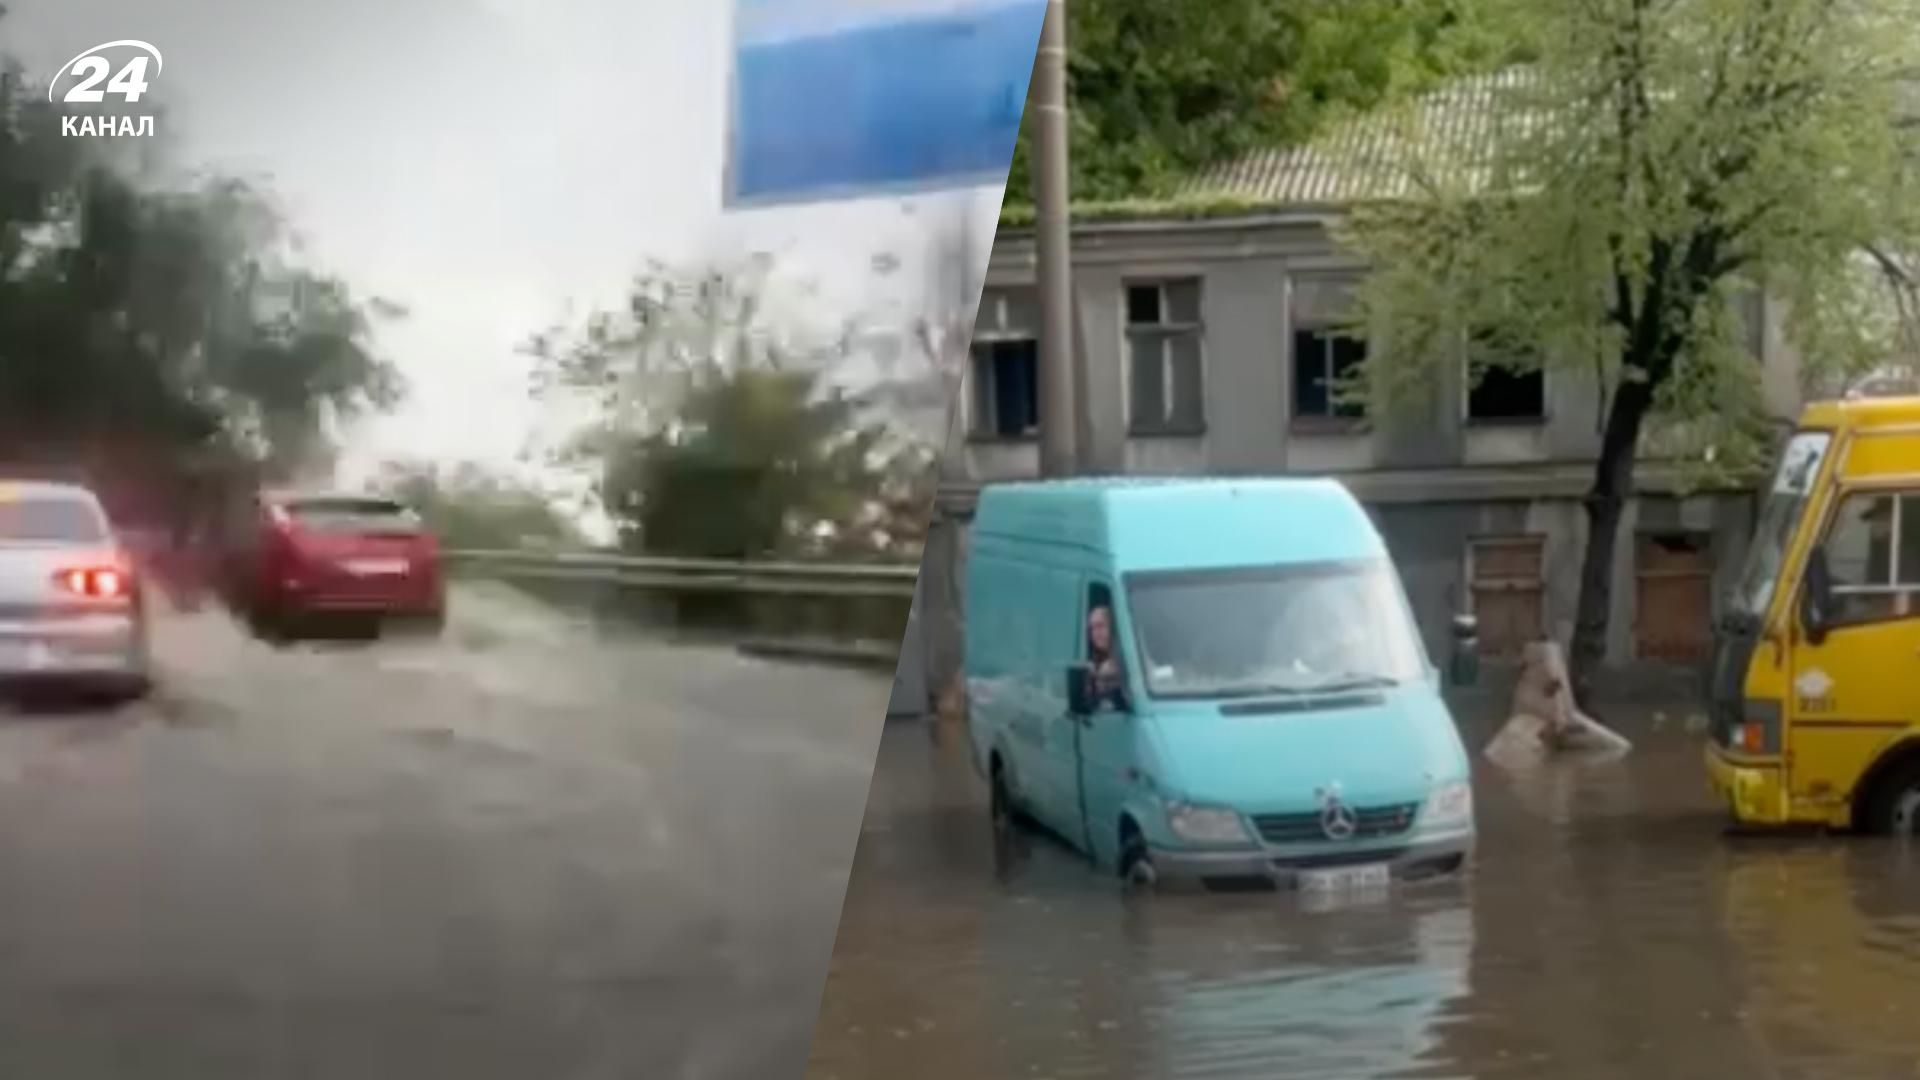 Ливень в Одессе сегодня - какие улицы накрыло водой и где не курсирует общественный транспорт